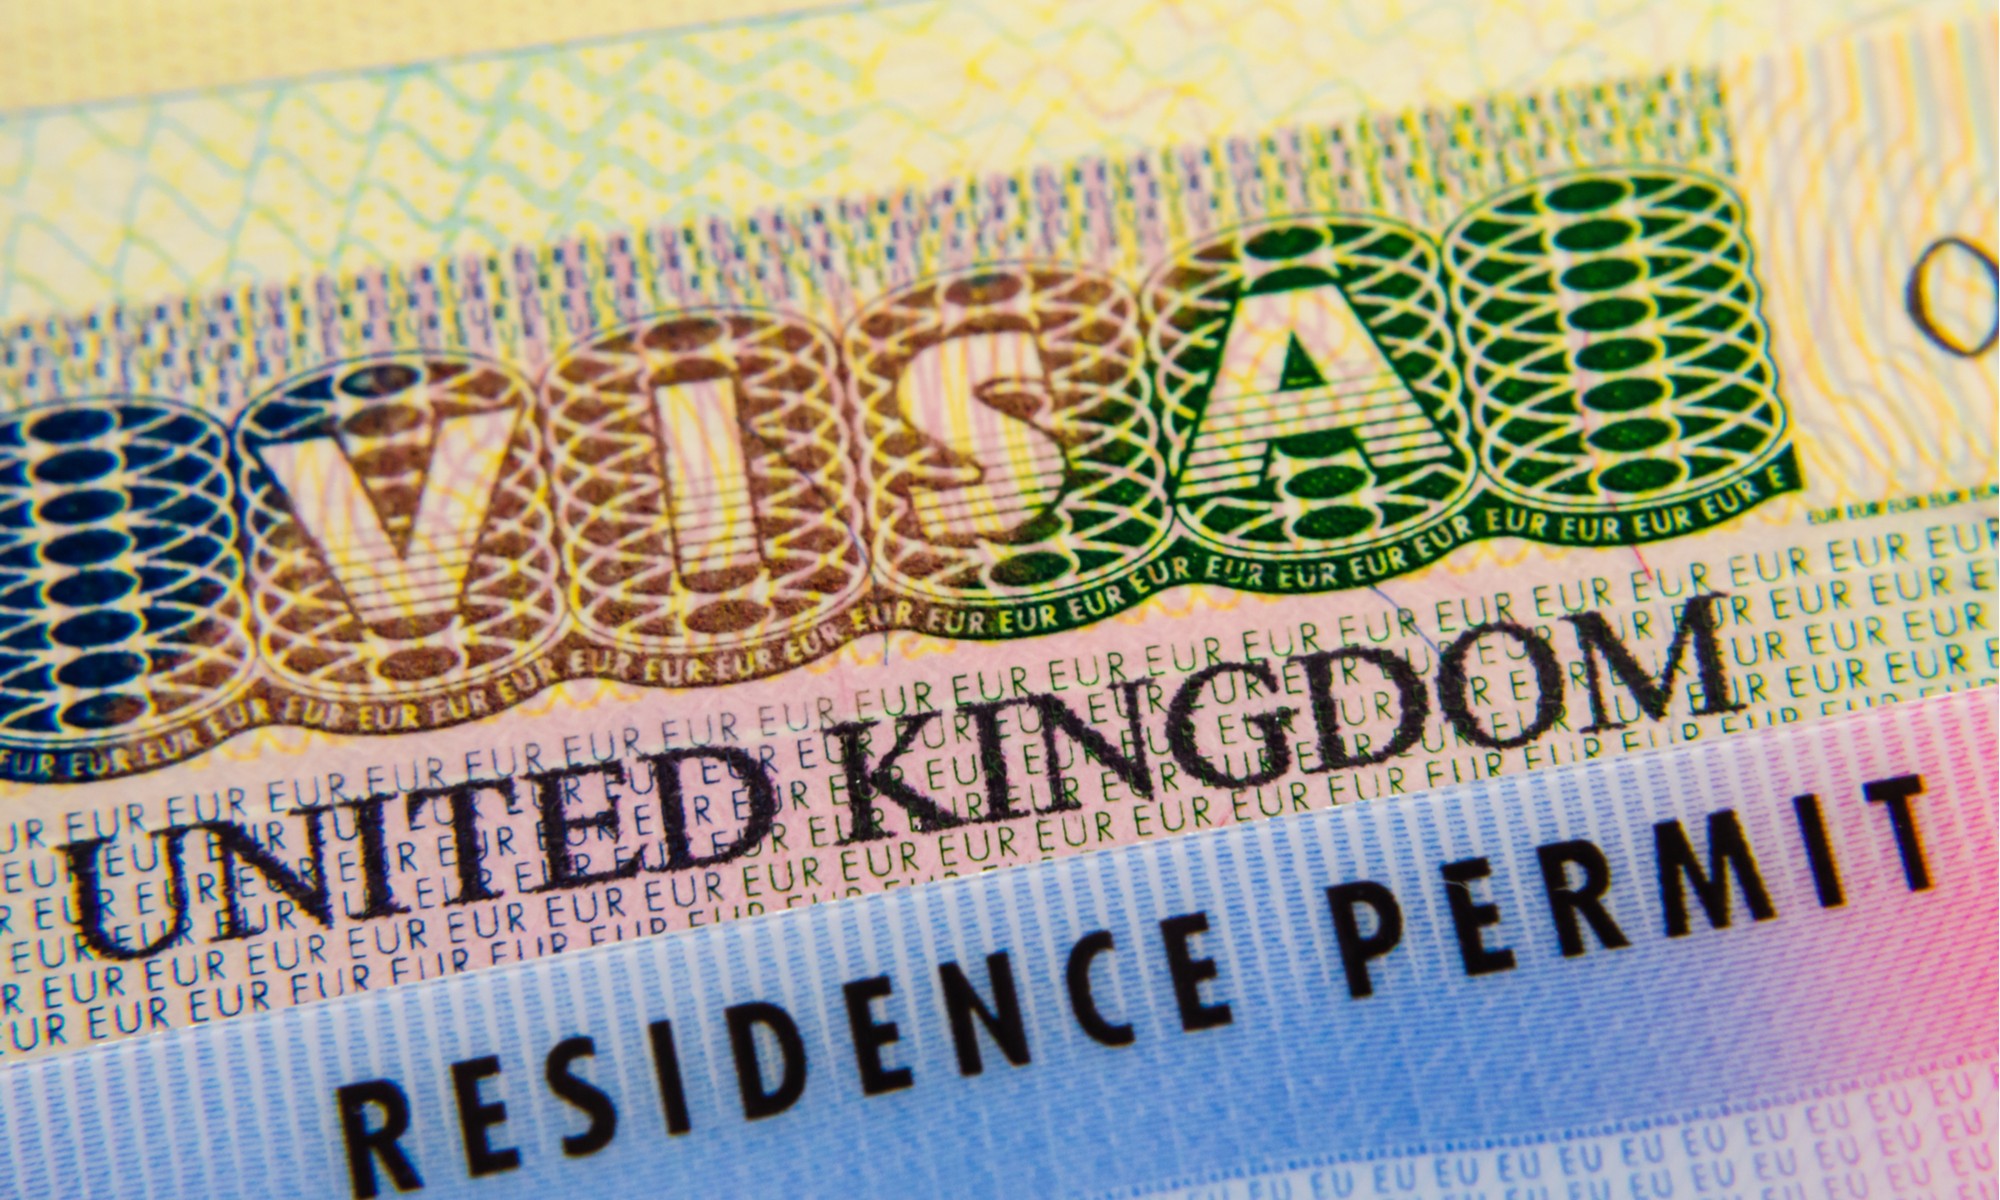 BREXIT régularisation des permis de résidence des ressortissants de l’UE au Royaume-Uni